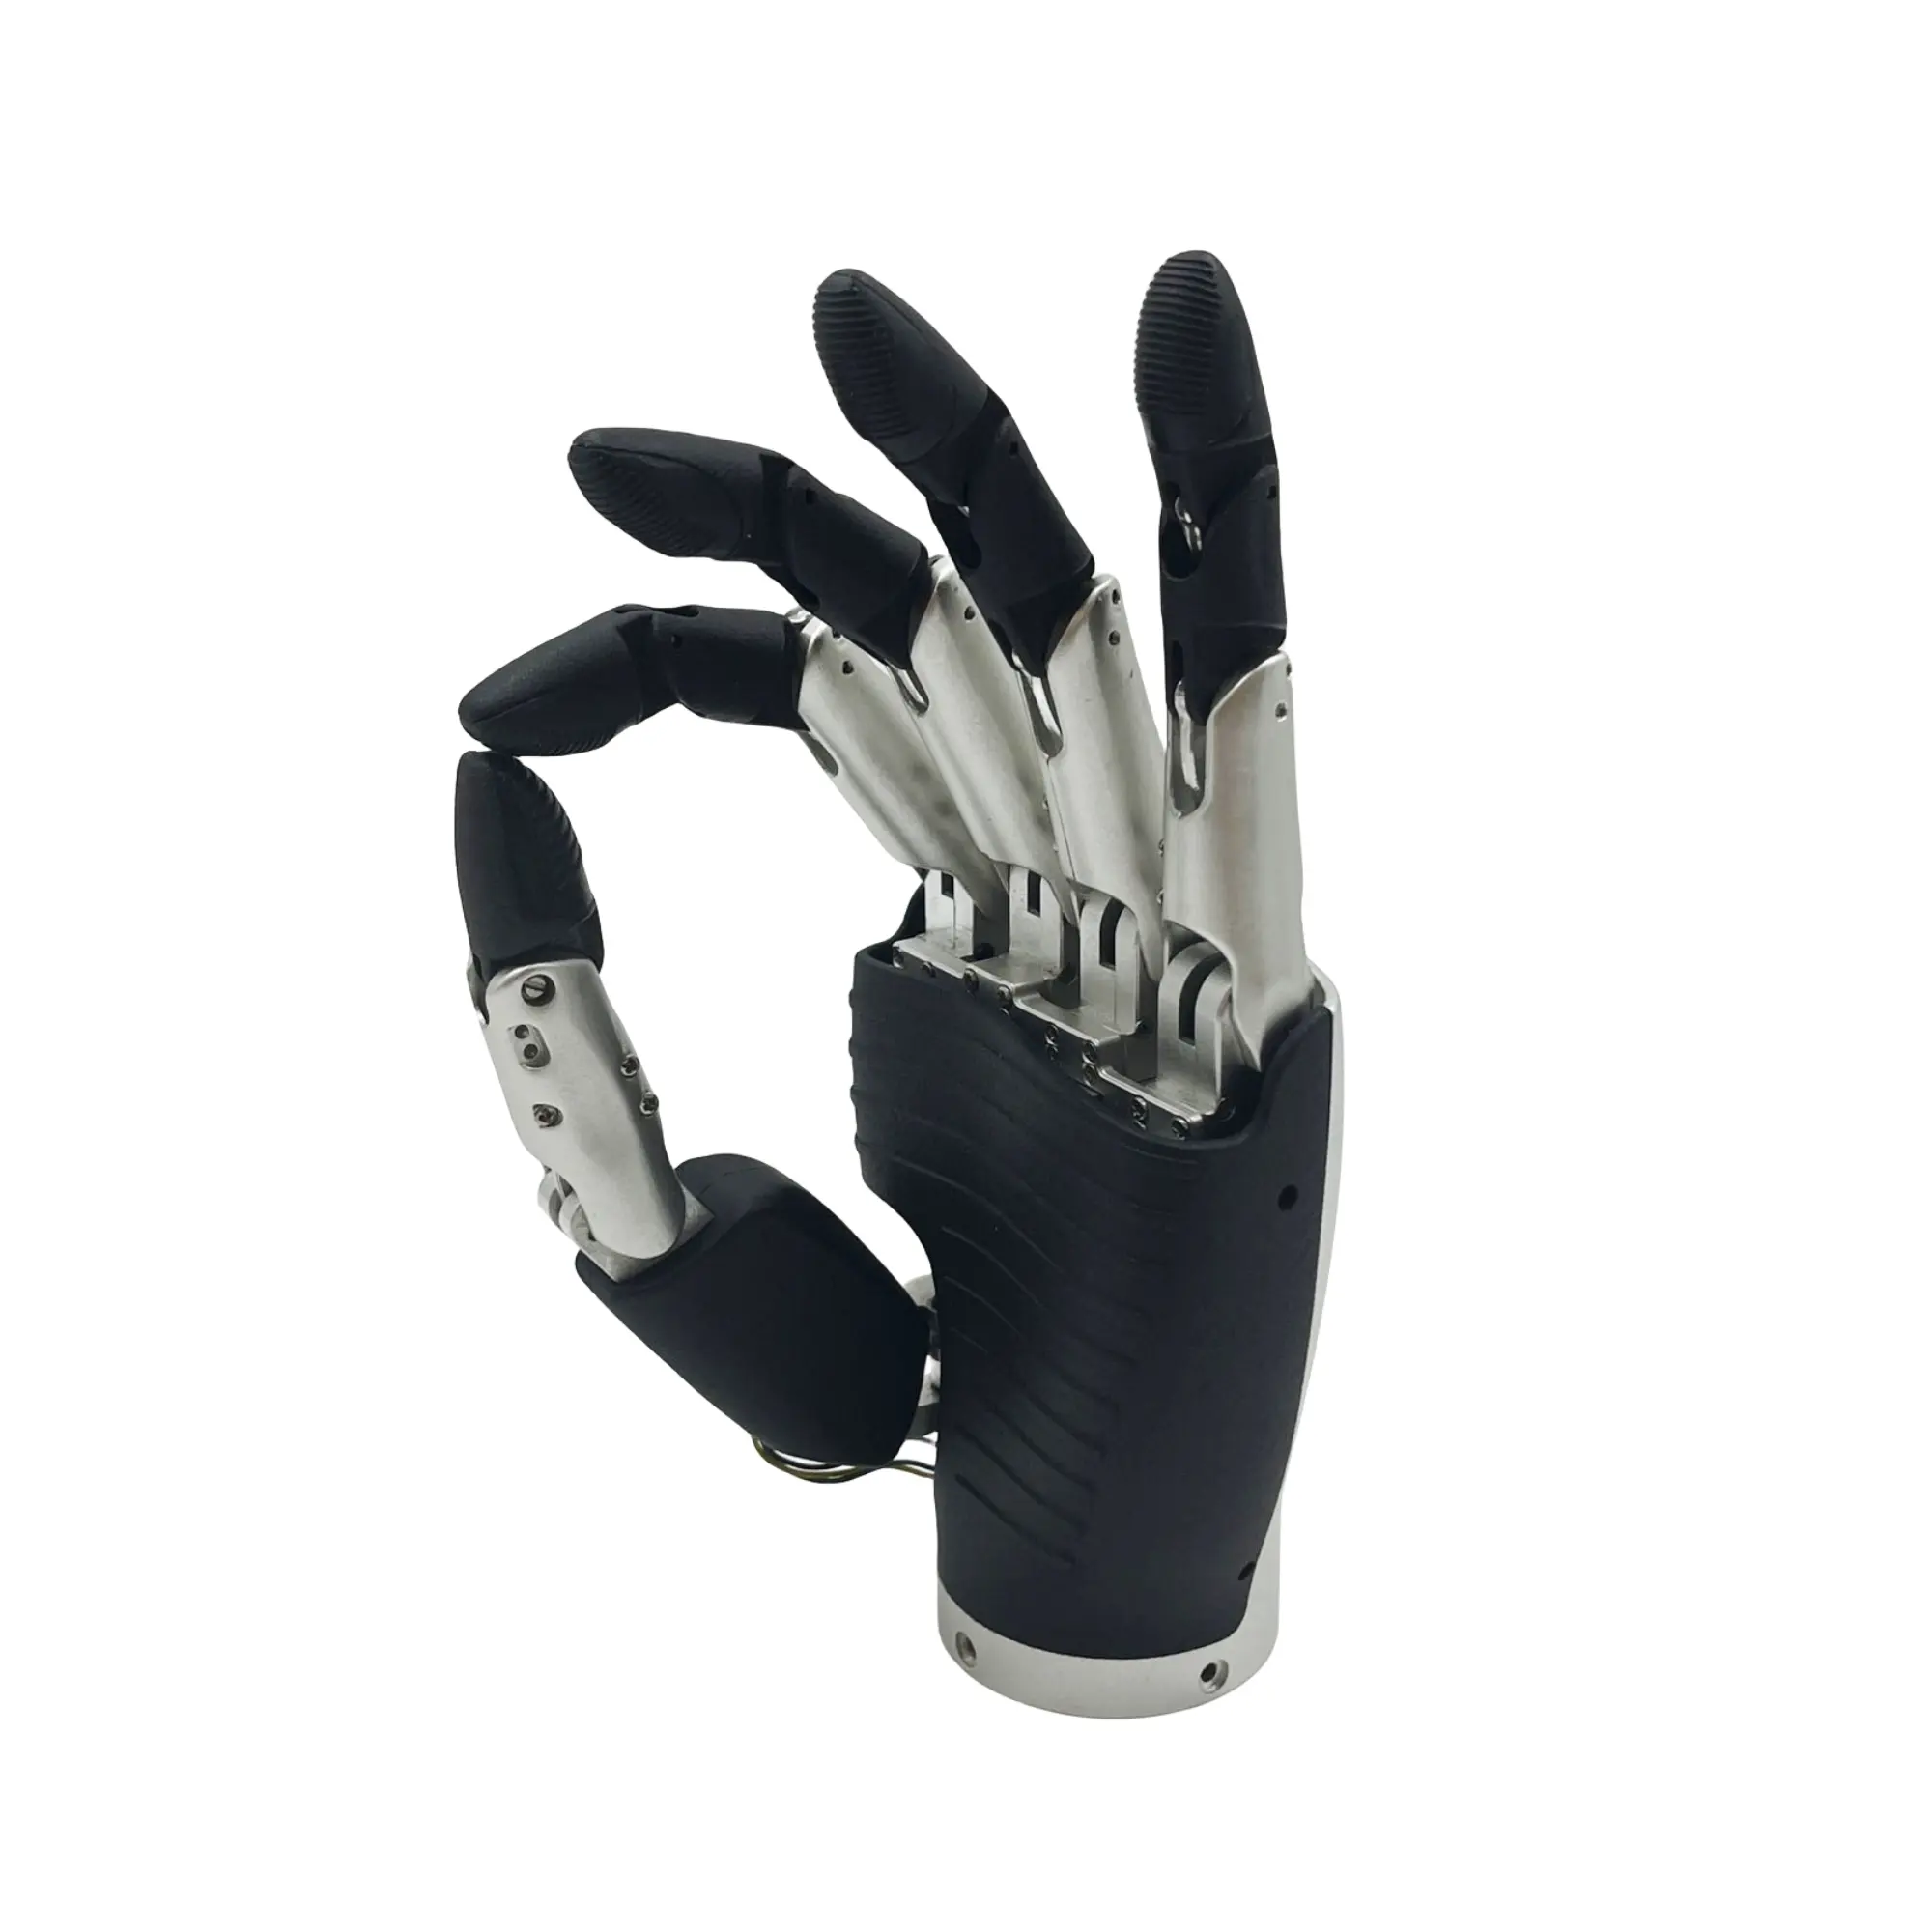 Articulación de mano biomimética 6DOF, mano diestra de cinco dedos, articulación de mano de robot biónico